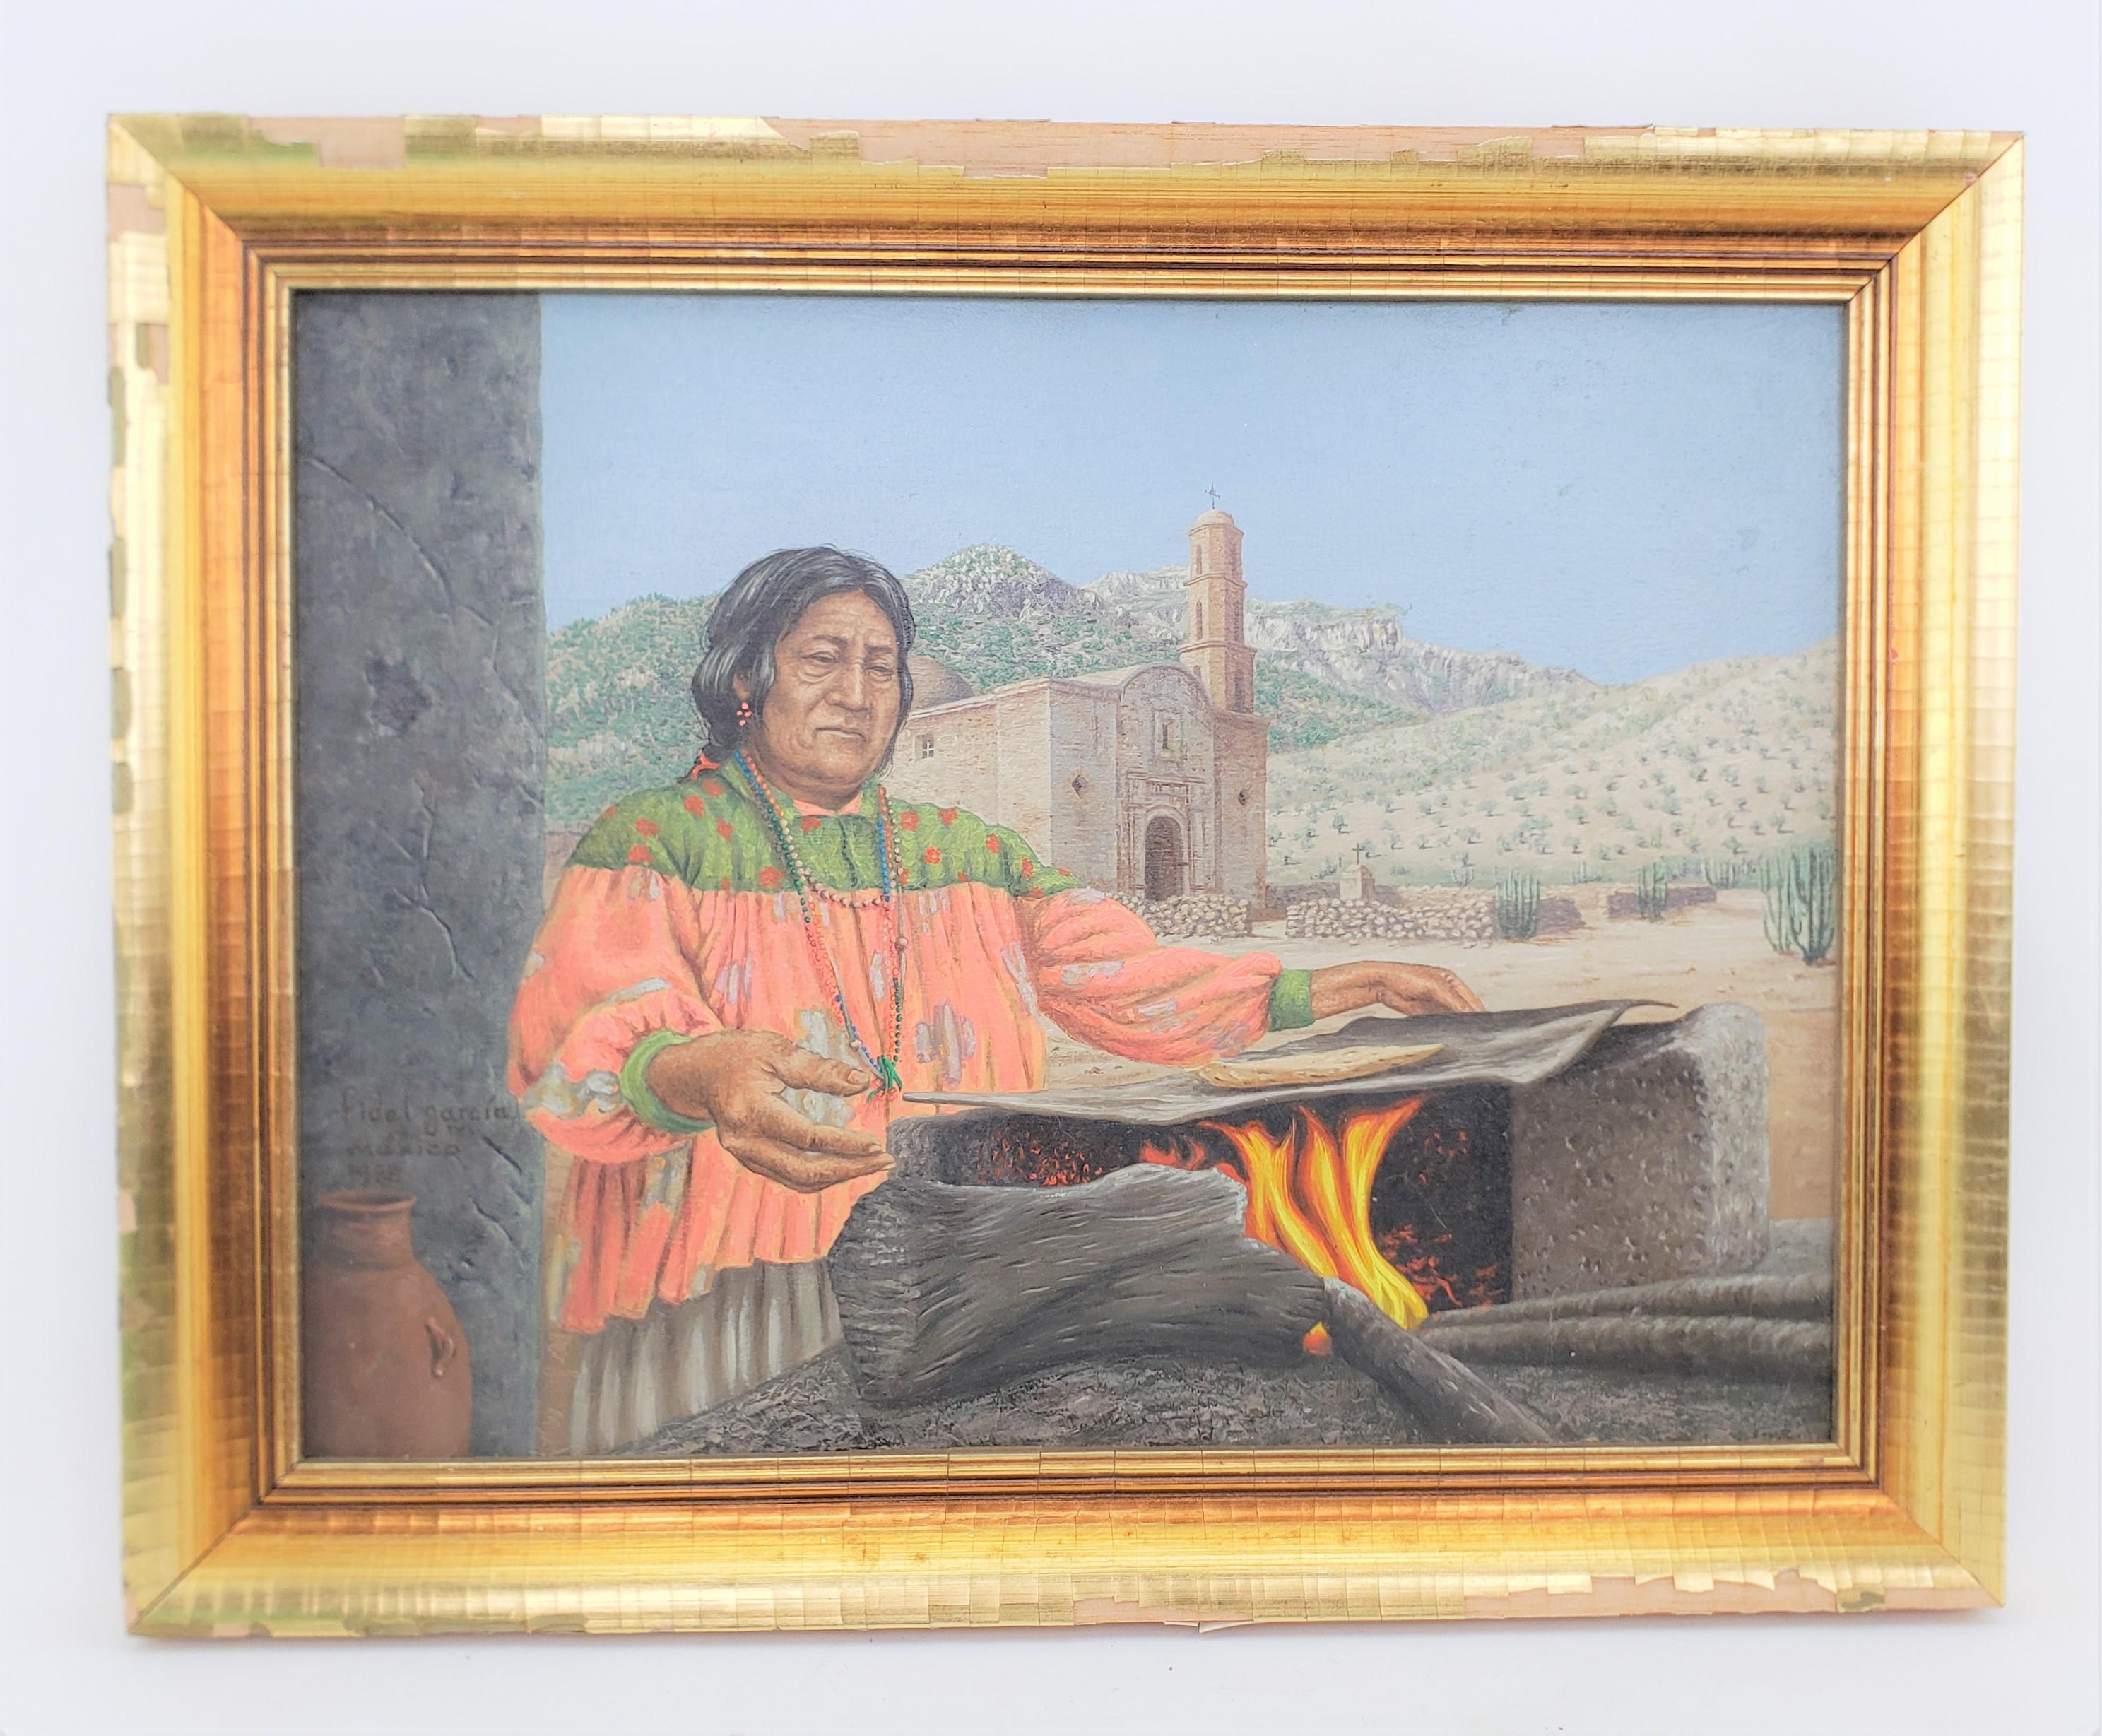 Dieses Originalgemälde wurde von Fidel Garcia M. aus Mexiko im Jahr 1988 in einem realistischen Stil gemalt. Das Gemälde ist auf Leinwand gemalt und zeigt einen mexikanischen Ureinwohner, der im Freien über einem offenen Feuer kocht. Der Titel des